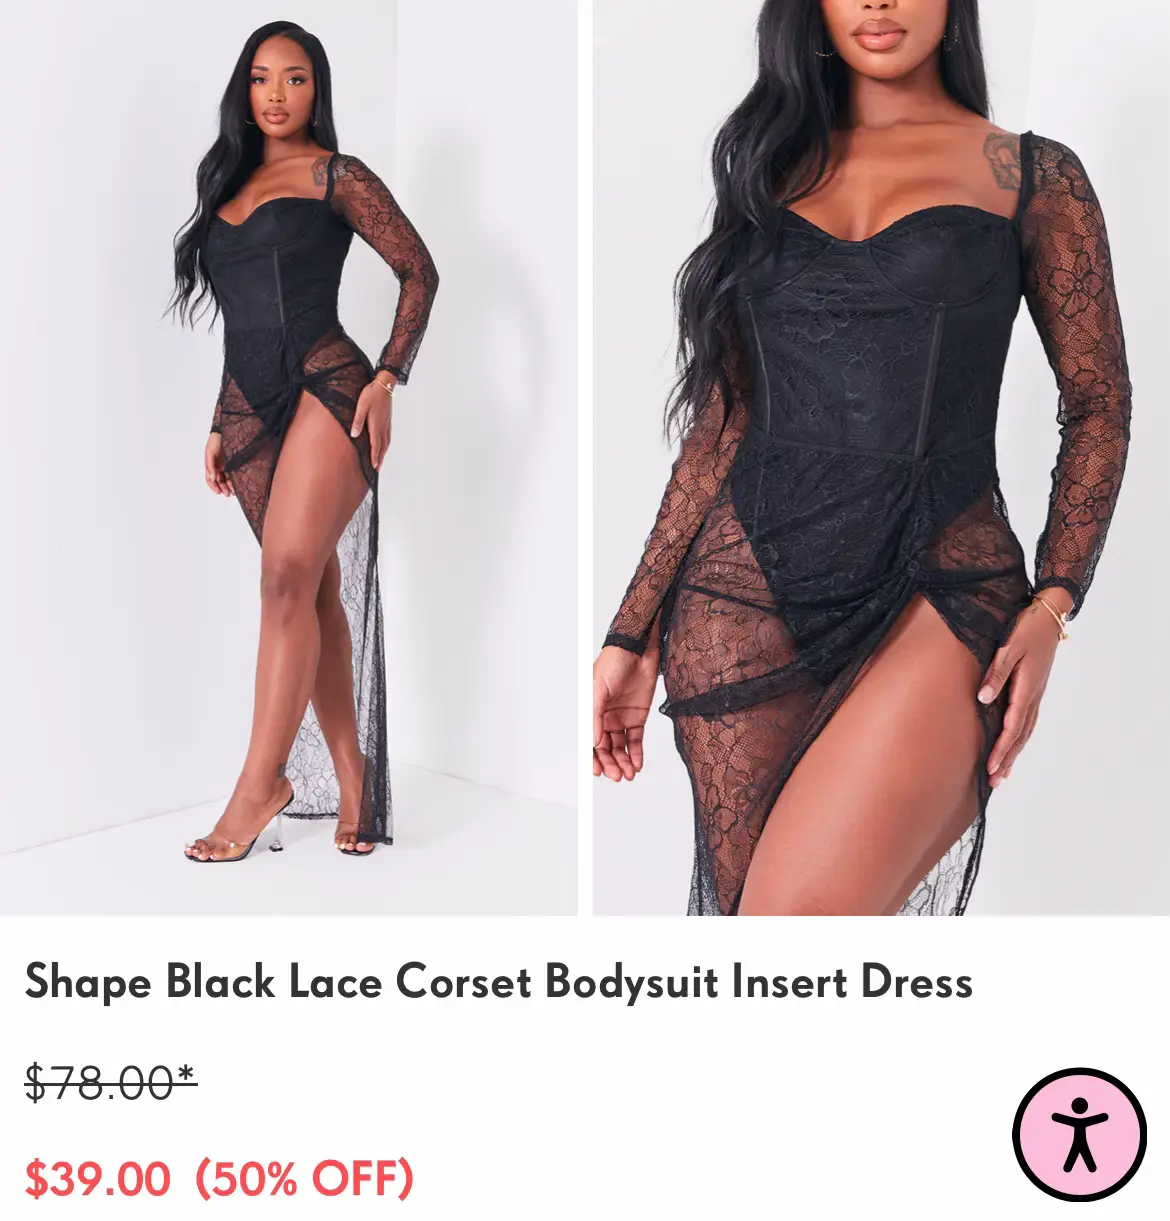 Shape Black Lace Corset Bodysuit Insert Dress